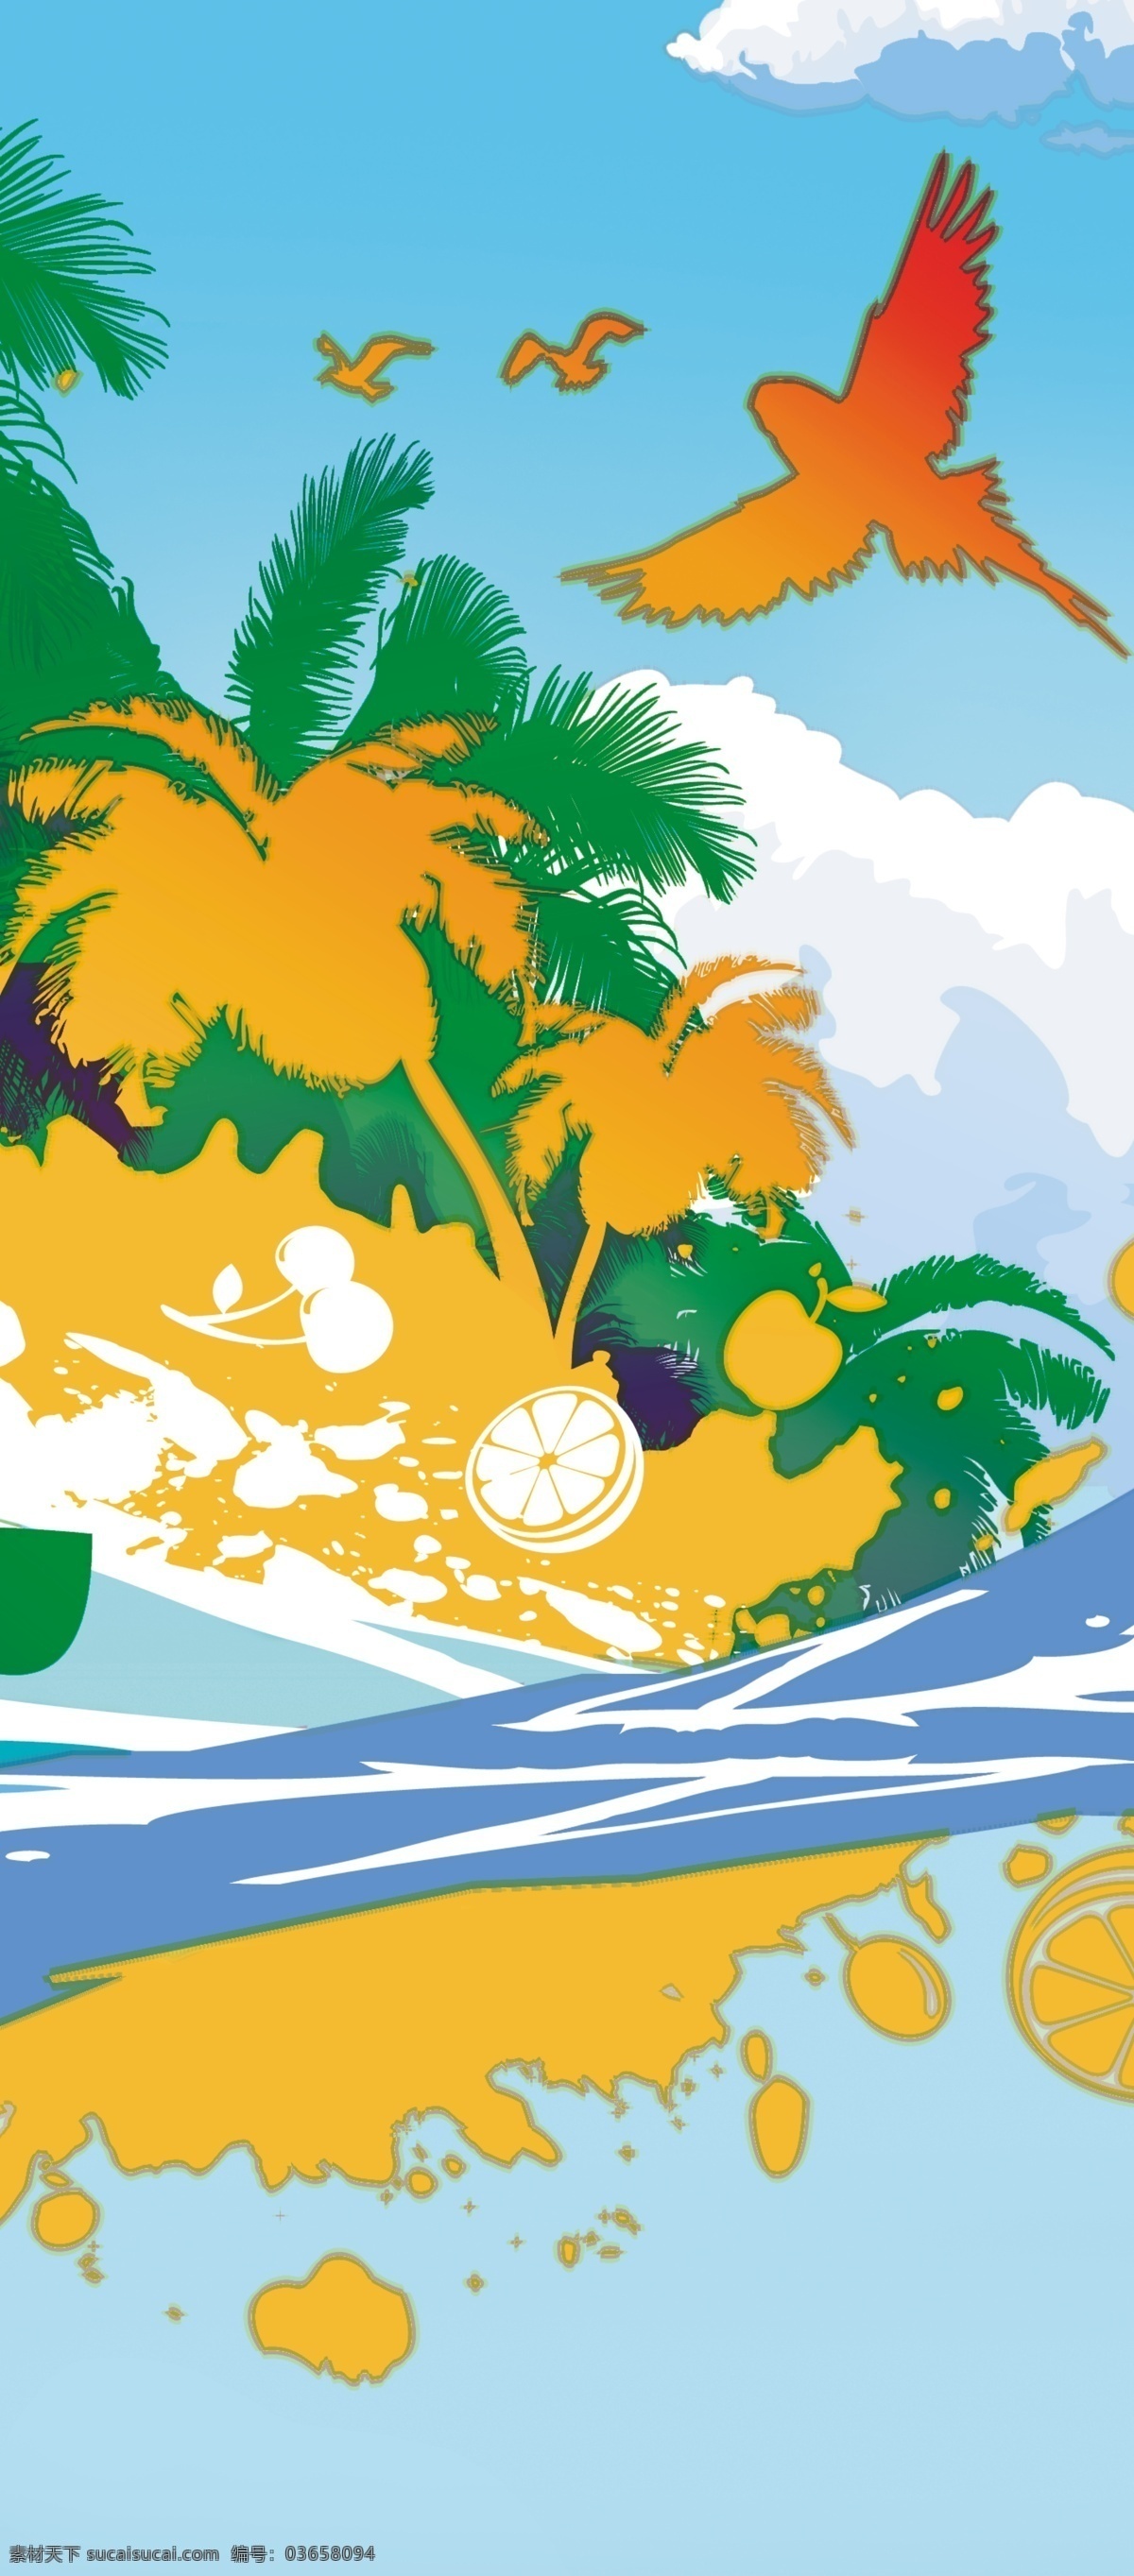 沙滩椰树鸟 沙滩 椰树 印花 海景 休闲 自然景观 自然风光